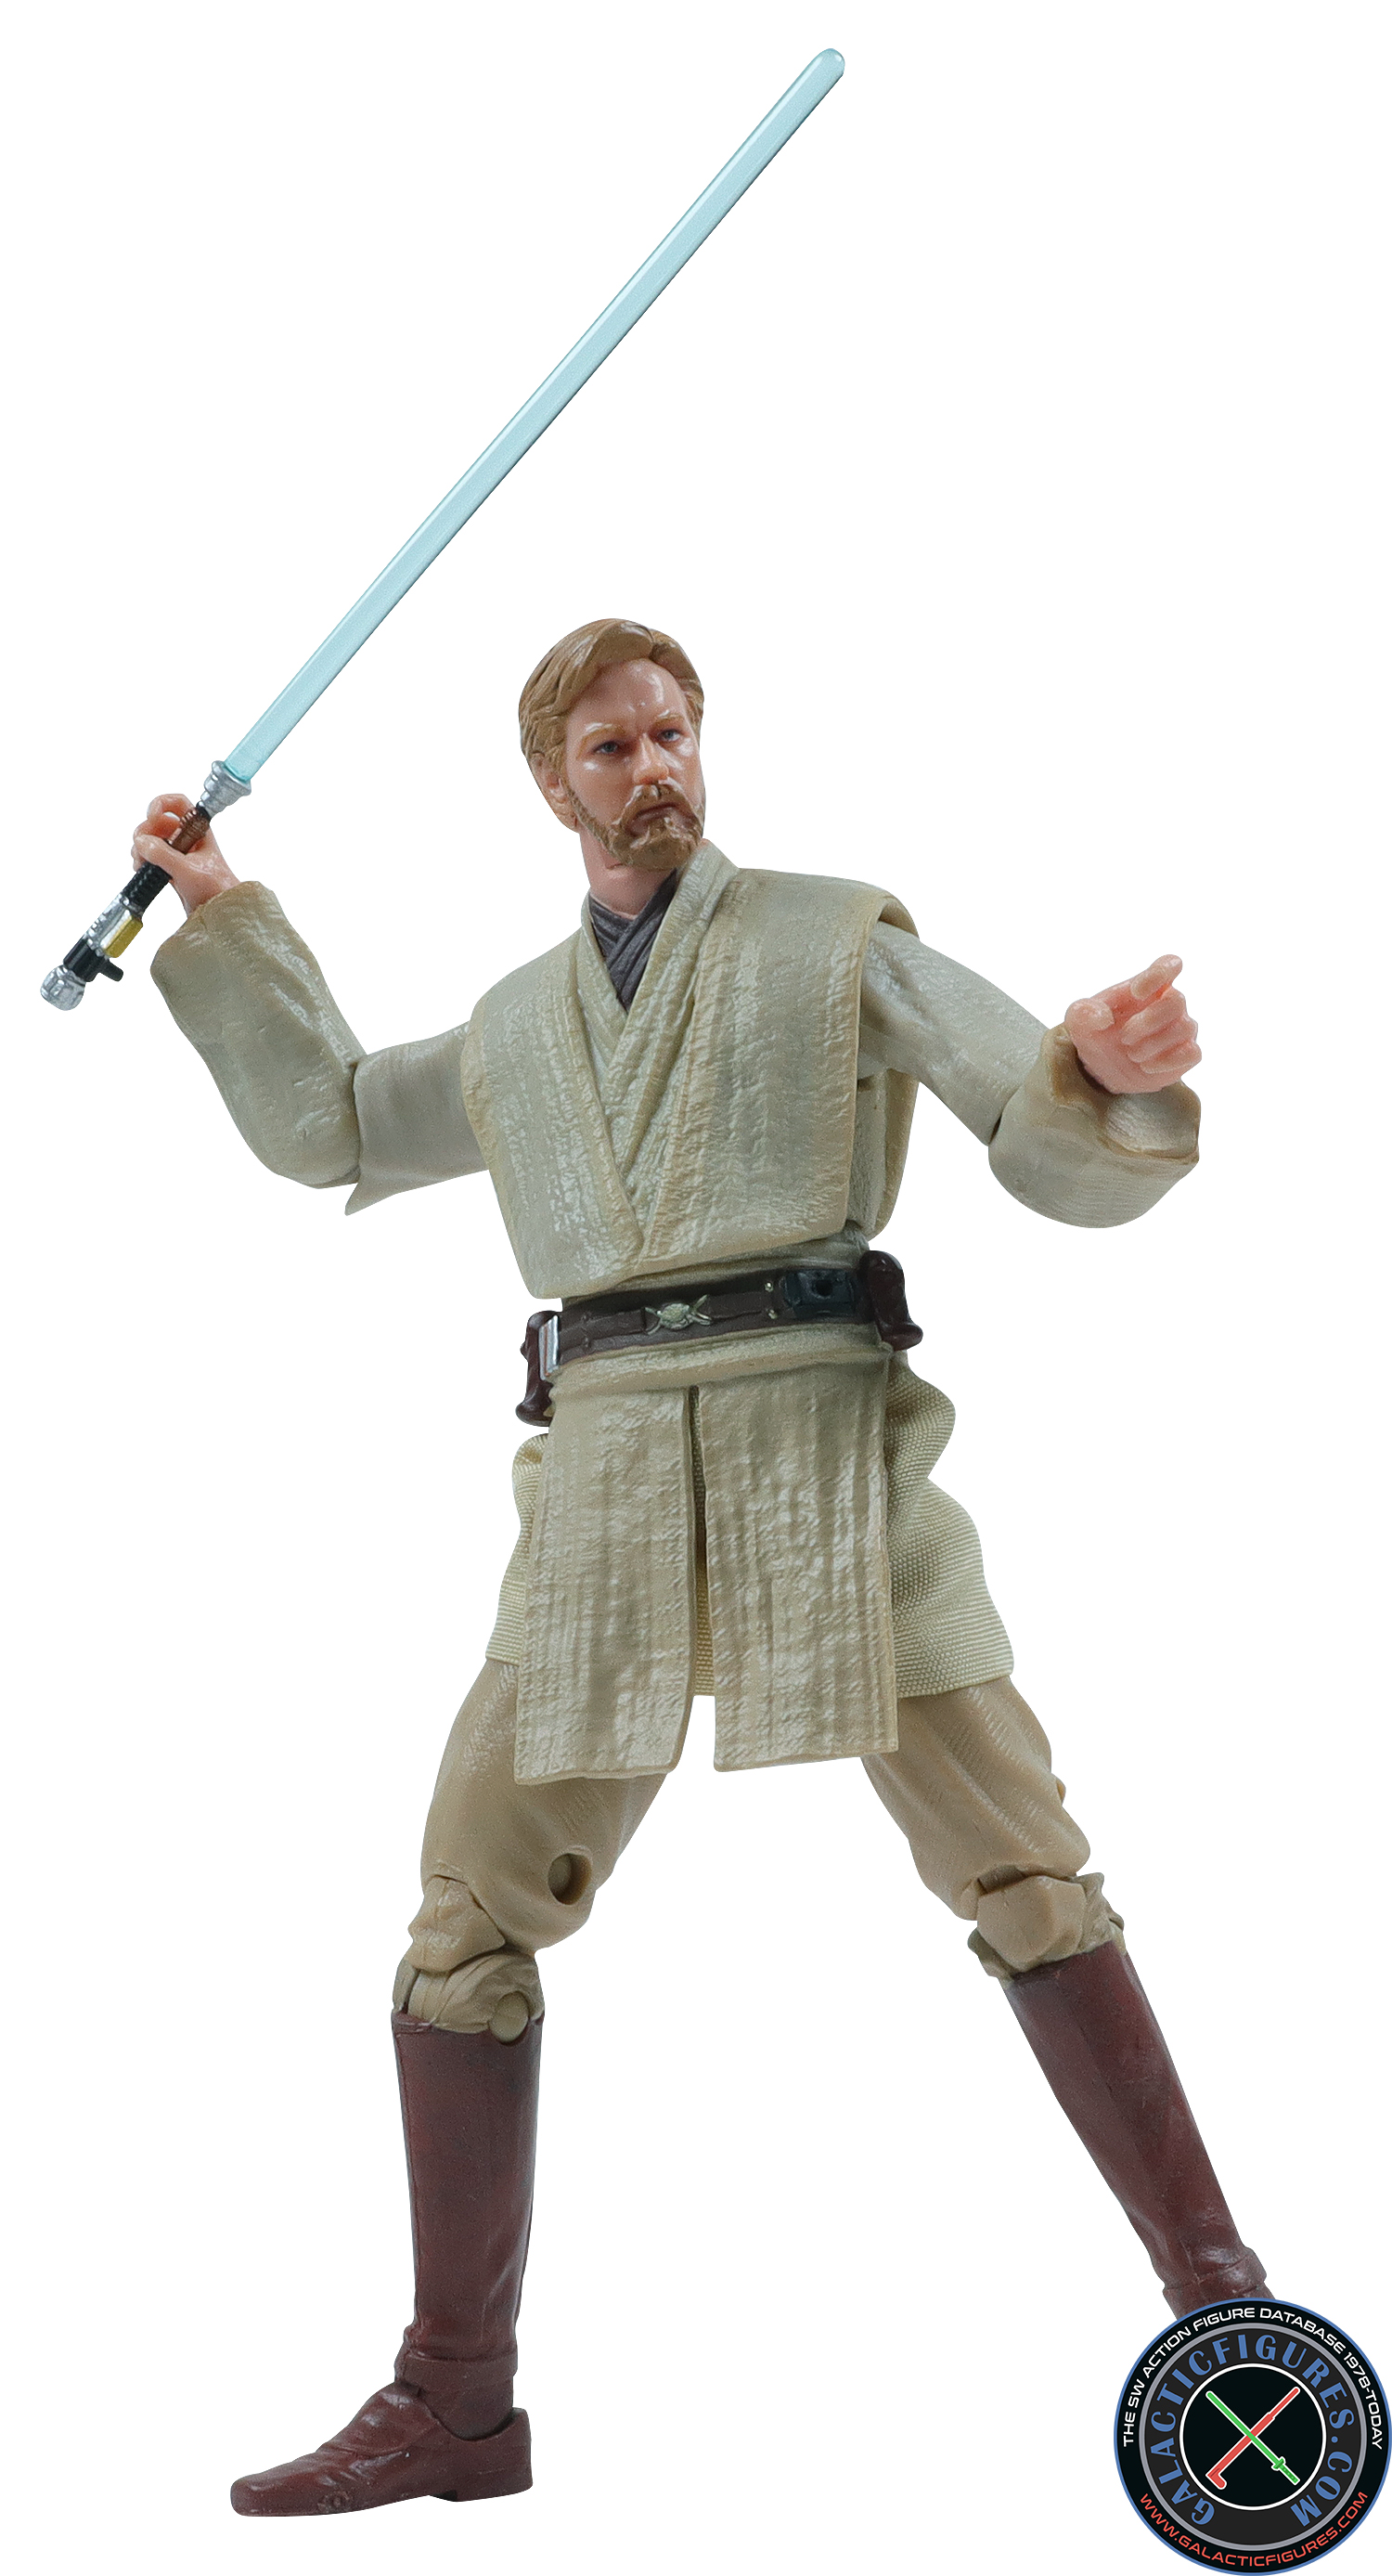 Obi-Wan Kenobi Revenge Of The Sith